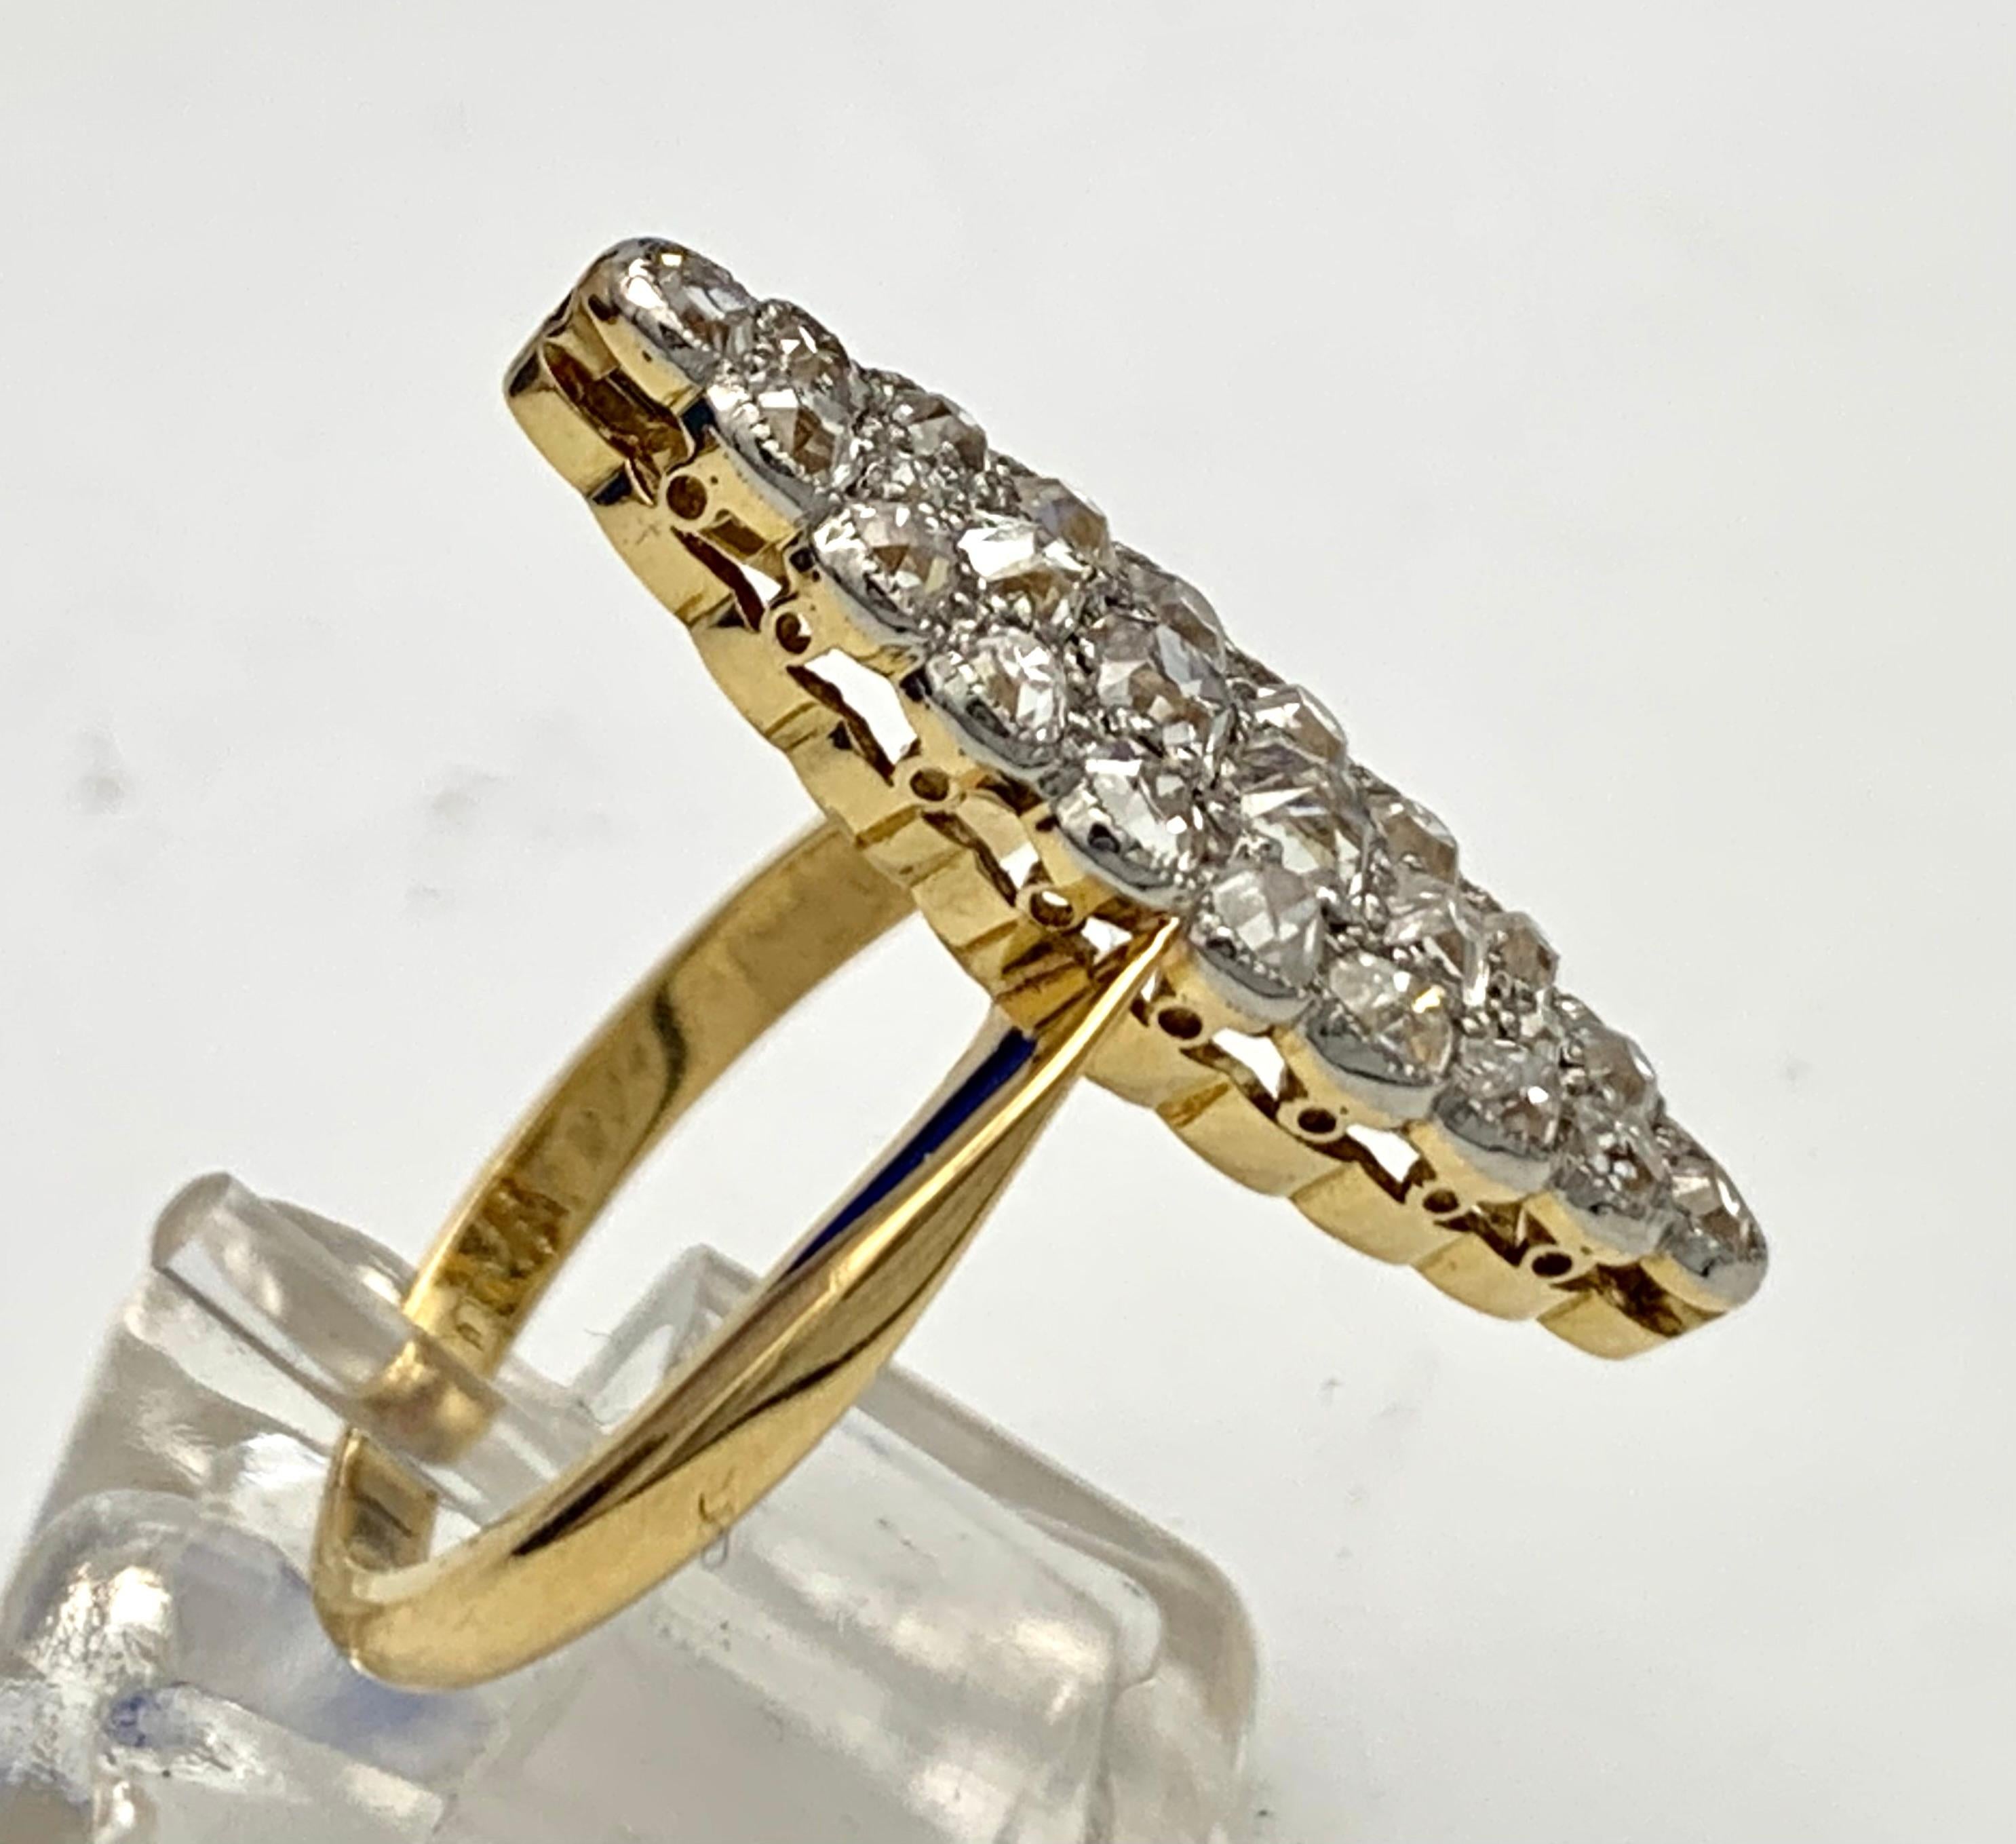 Die Ringform des Ringkopfes ist als spitzes Oval mit gewellten Kanten gestaltet. Vierundzwanzig runde Diamanten sind in einer Millegrain-Fassung aus Platin eingefasst. Die Platinplatte ist  auf einen 18-karätigen Goldring aufgezogen.
Der Ring ist